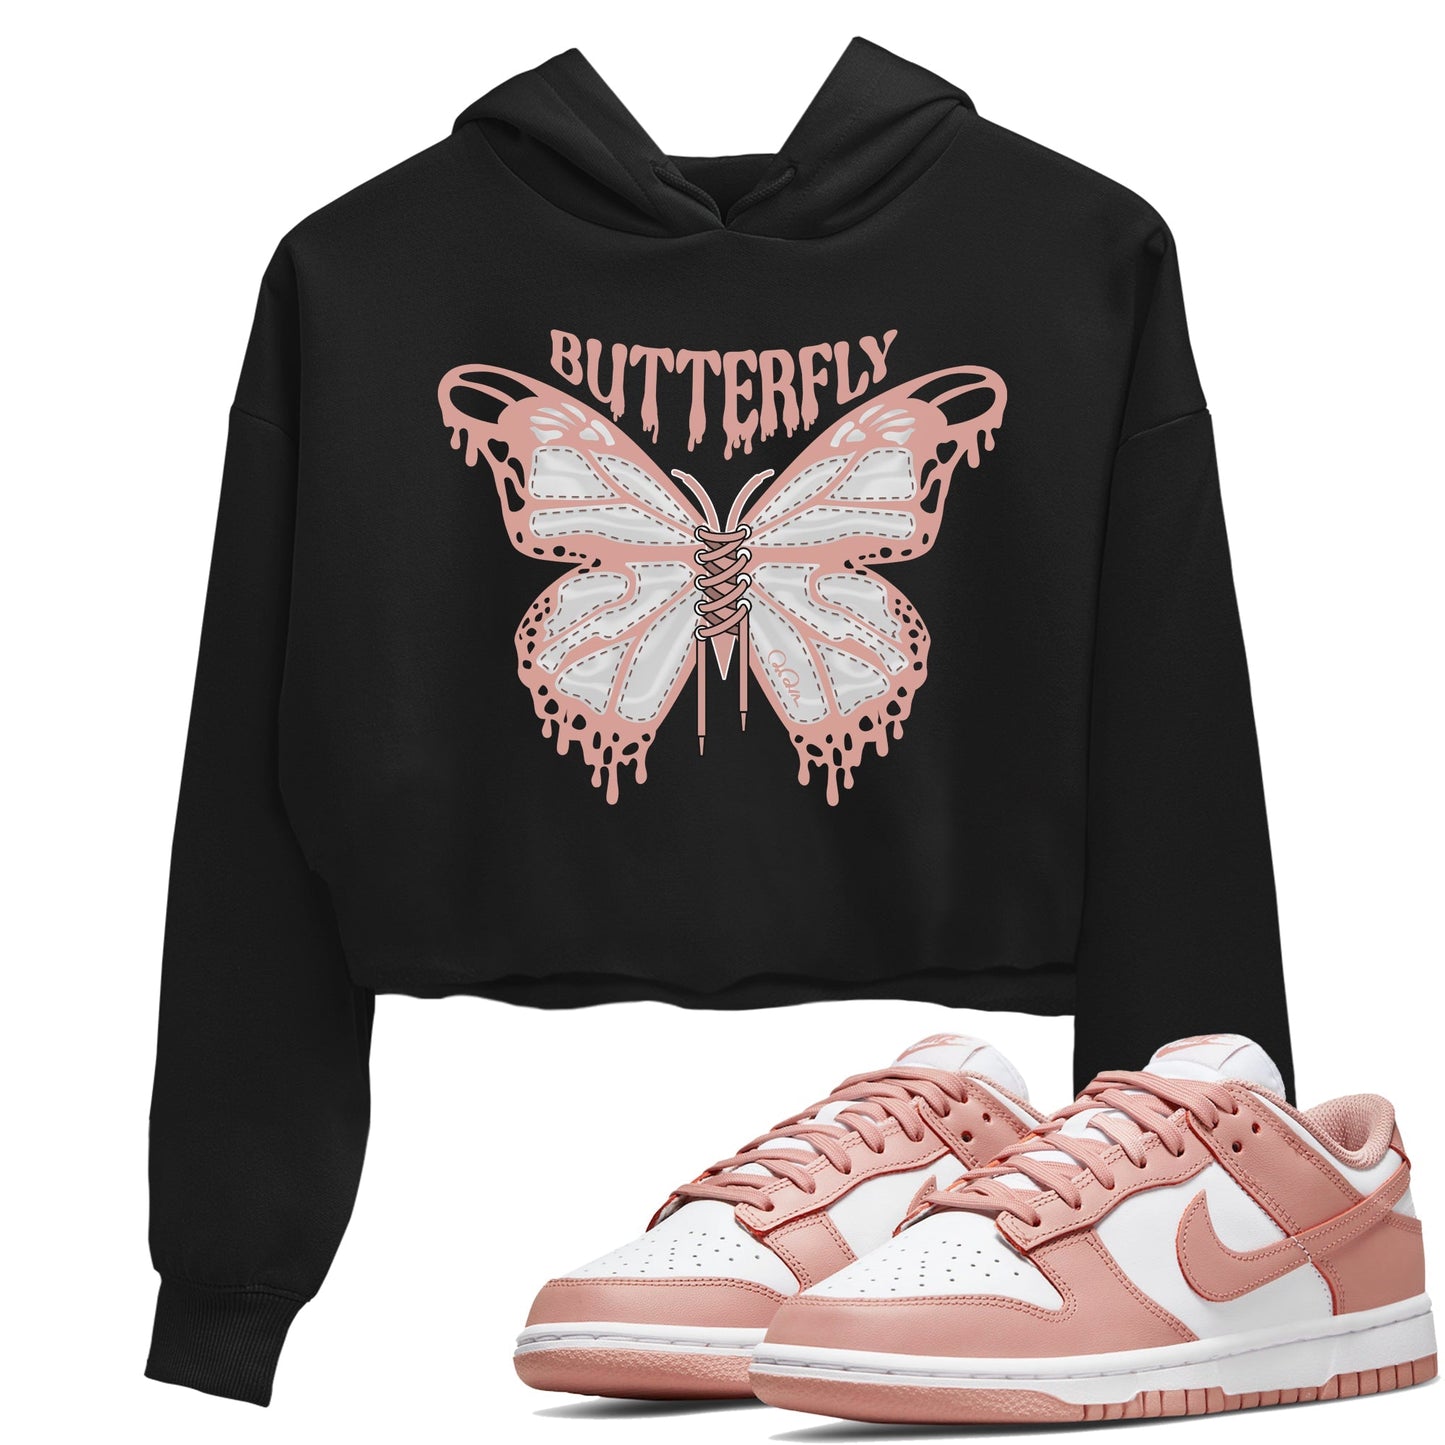 Dunk Rose Whisper shirt to match jordans Butterfly Streetwear Sneaker Shirt Nike Dunk LowRose Whisper Drip Gear Zone Sneaker Matching Clothing Black 1 Crop T-Shirt